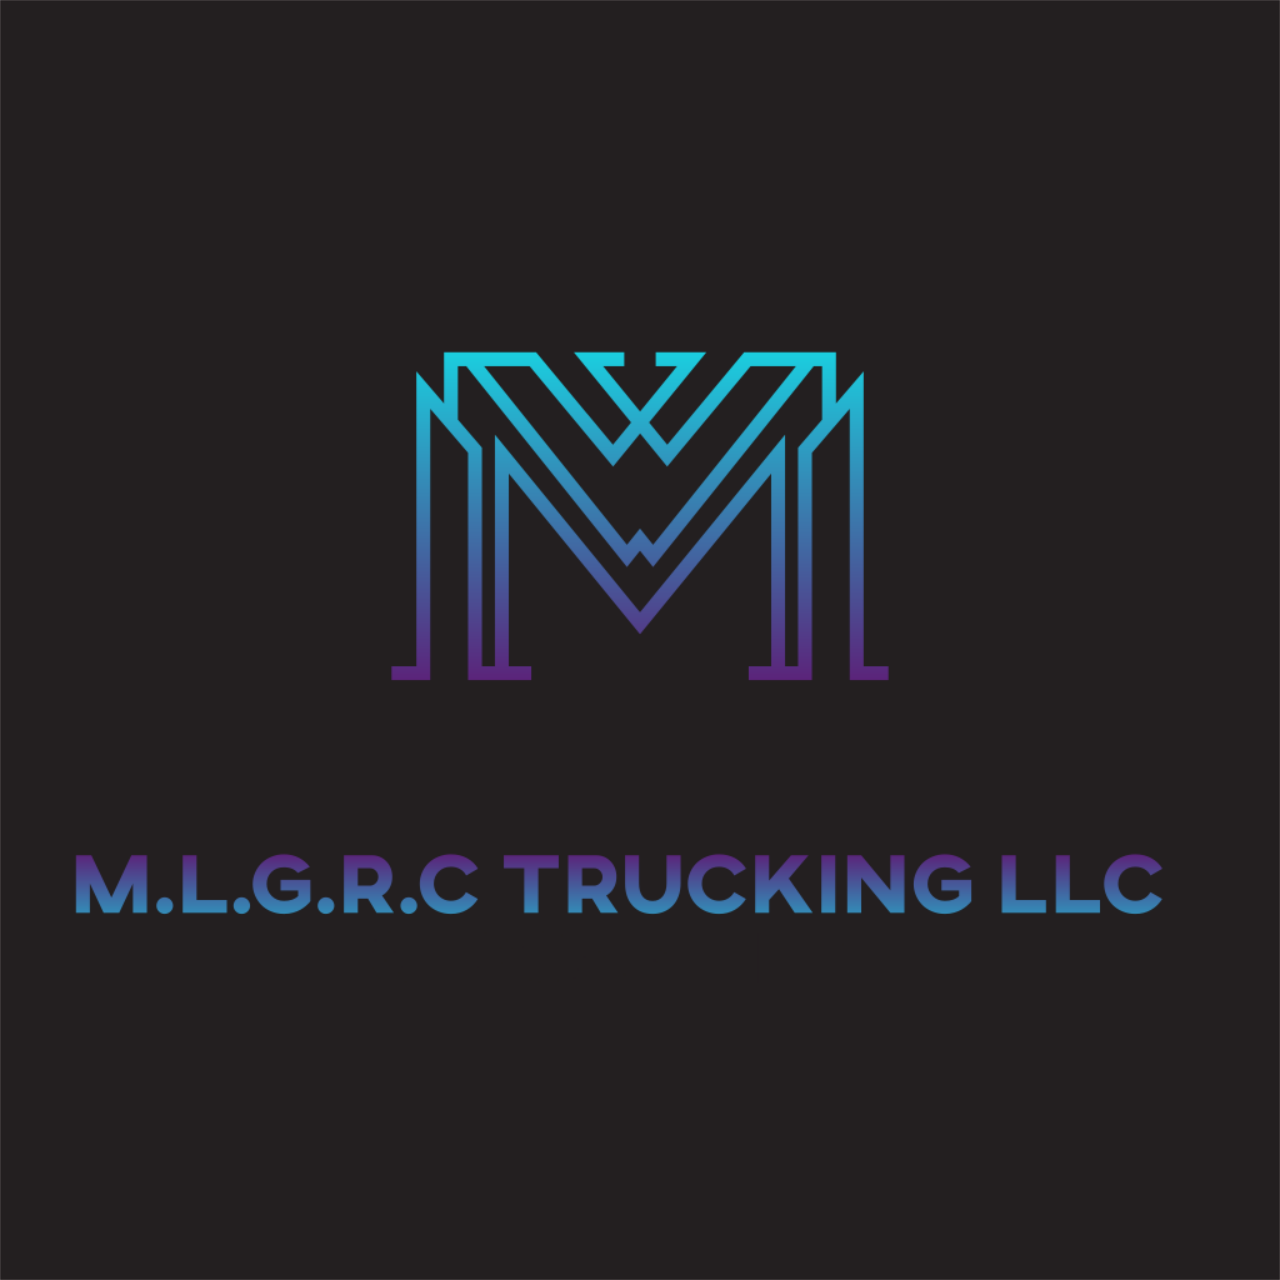 M.L.G.R.C Trucking LLC's web page